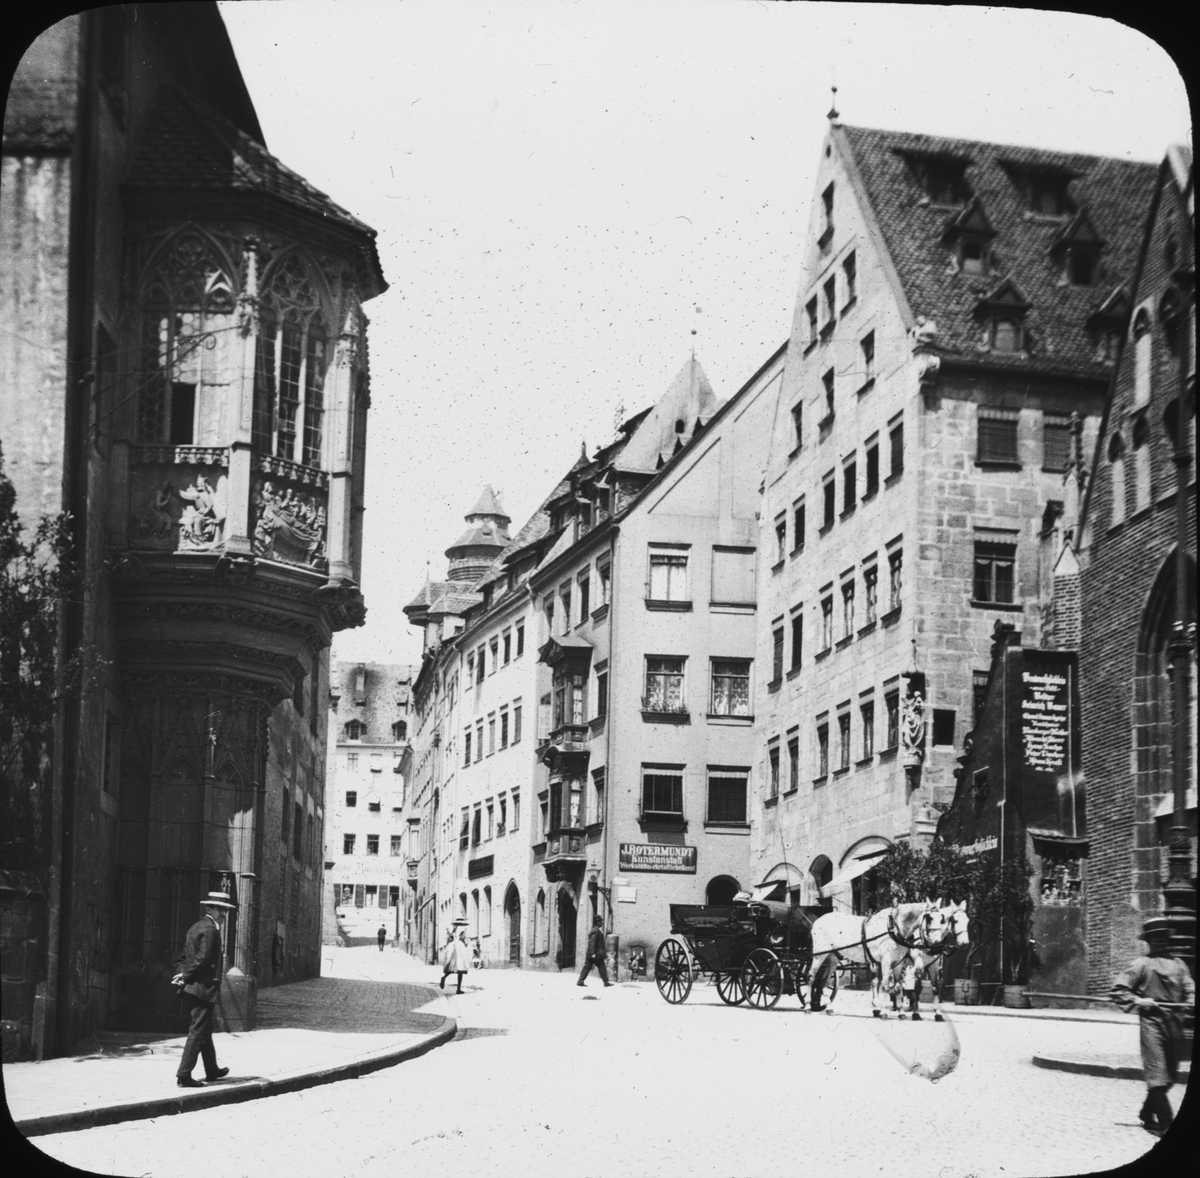 Skioptikonbild med motiv från Albrecht Dürer Platz i Nürnberg.
Bilden har förvarats i kartong märkt: Vårresan 1910 Nürnberg 9. XV. Text på bild: "Alb. Dürerplatz"